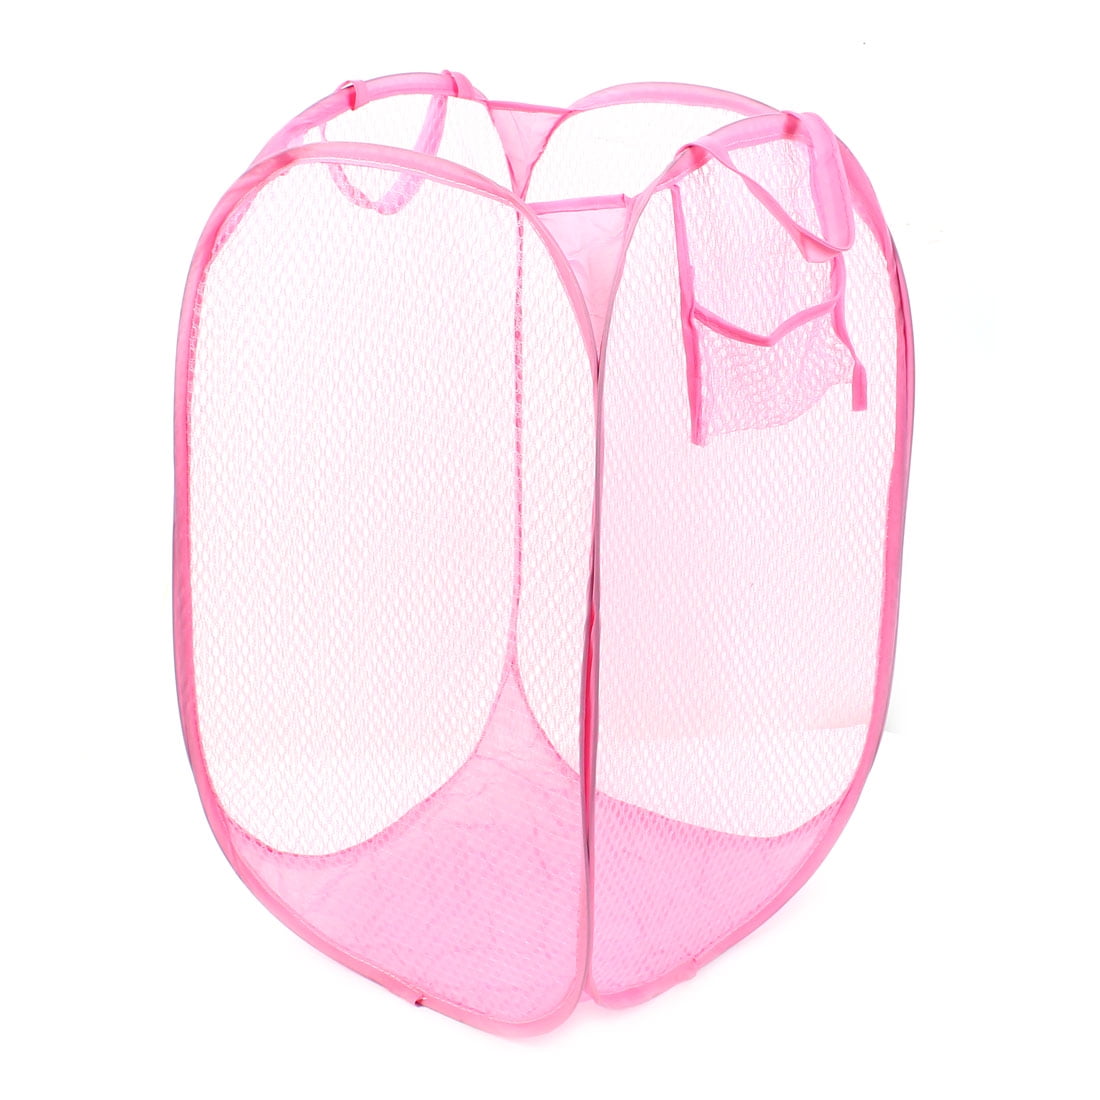 Foldable Pop Up Washing Clothes Laundry Basket Bag Bin Hamper Mesh Storage Pink 